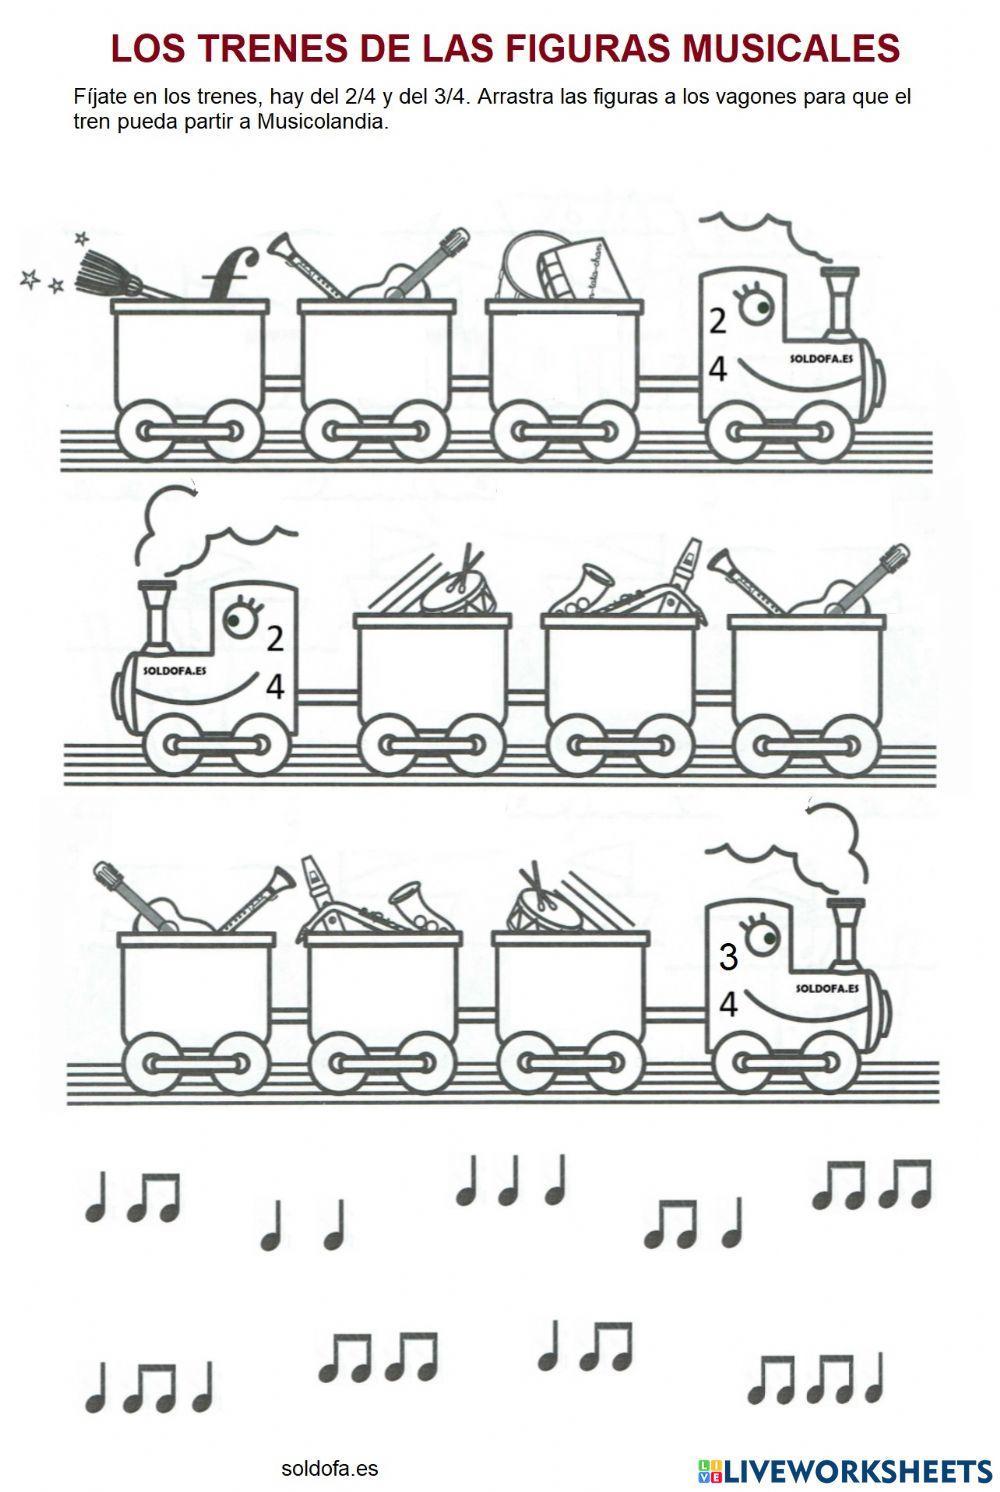 Los trenes de las figuras musicales